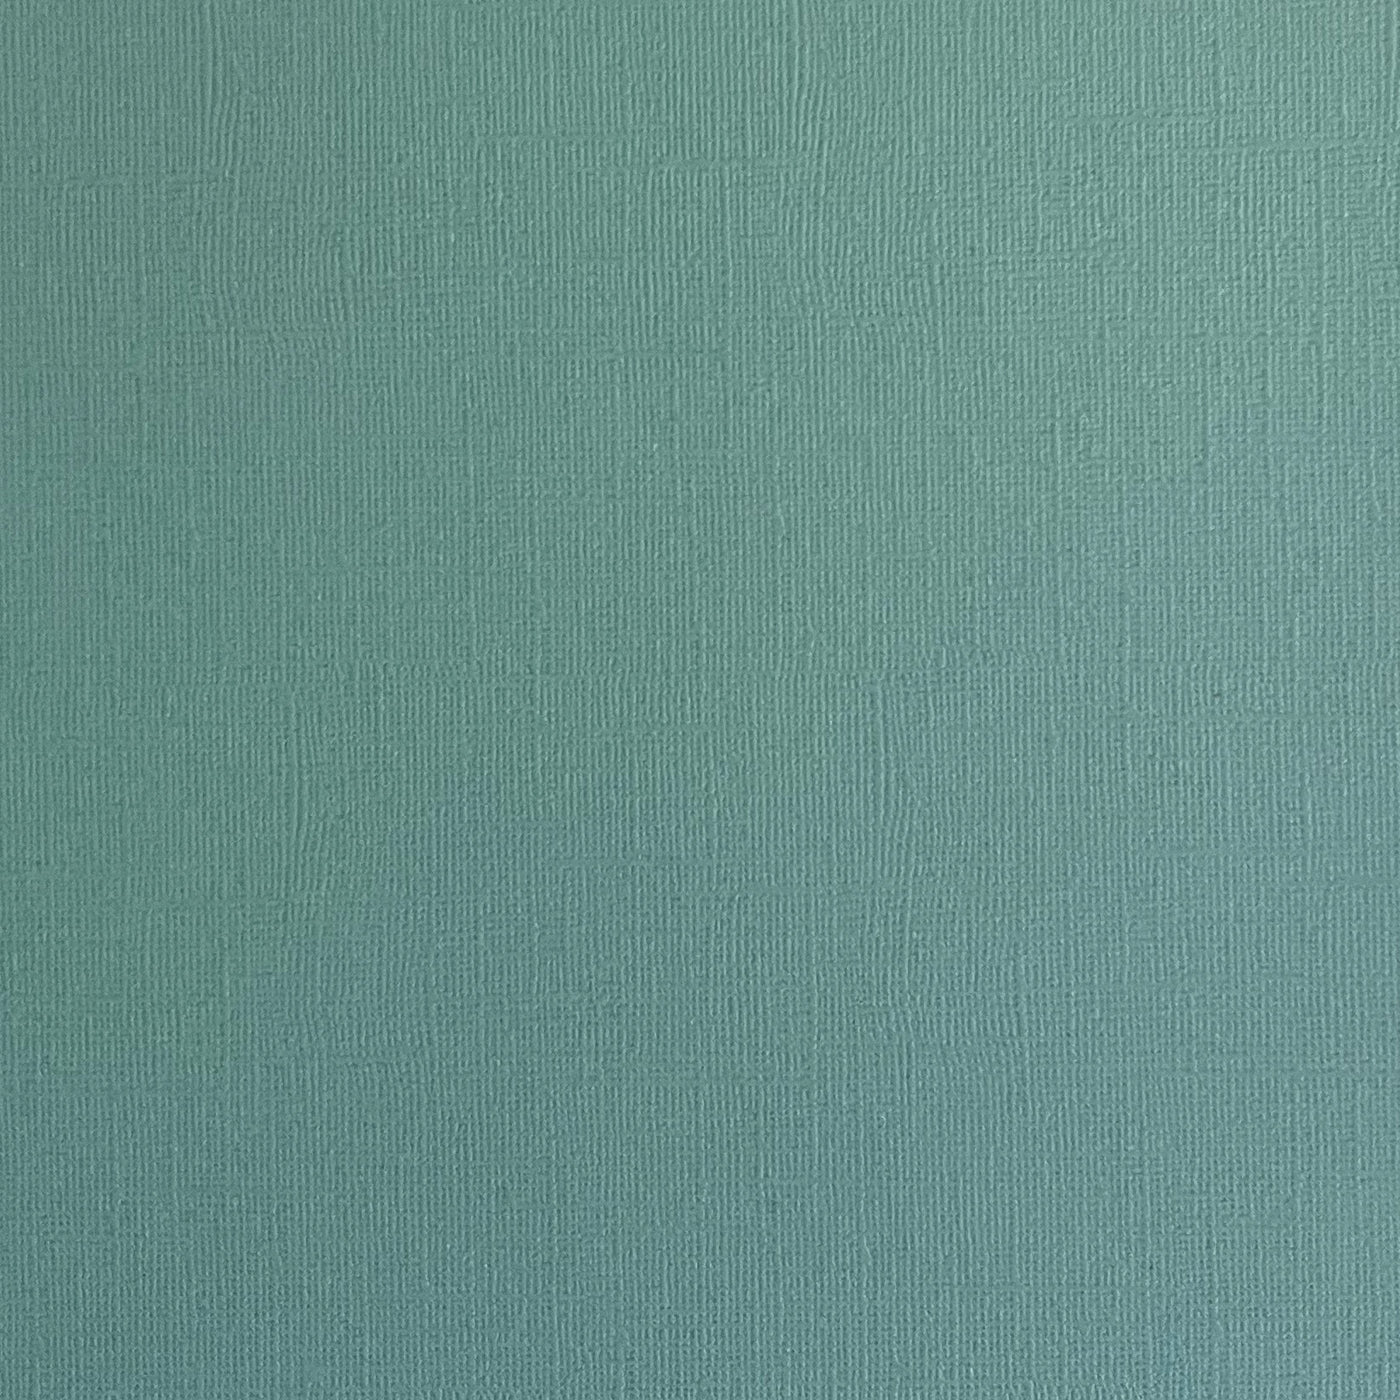 MEDITERRANEAN BLUE - Aqua Blue Textured 12x12 Cardstock - Encore Paper